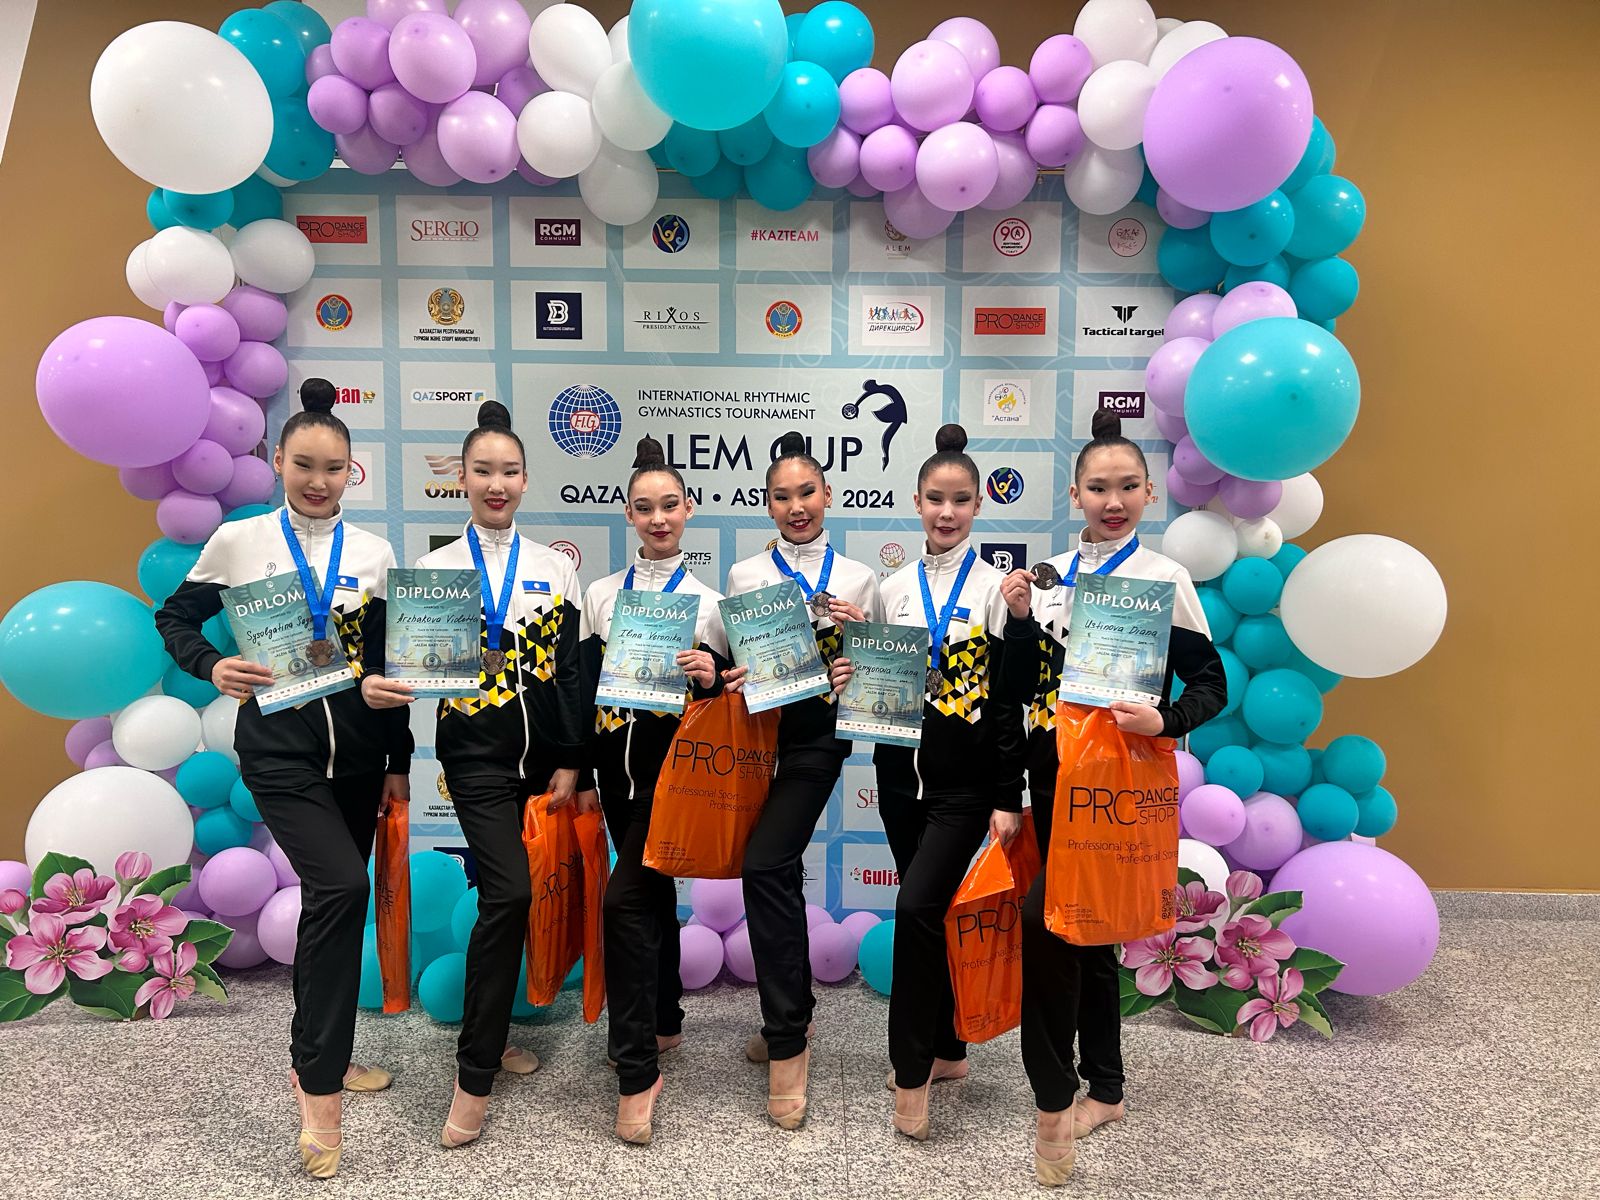 Команда Якутии завоевала бронзу на международном турнире по художественной гимнастике в Казахстане